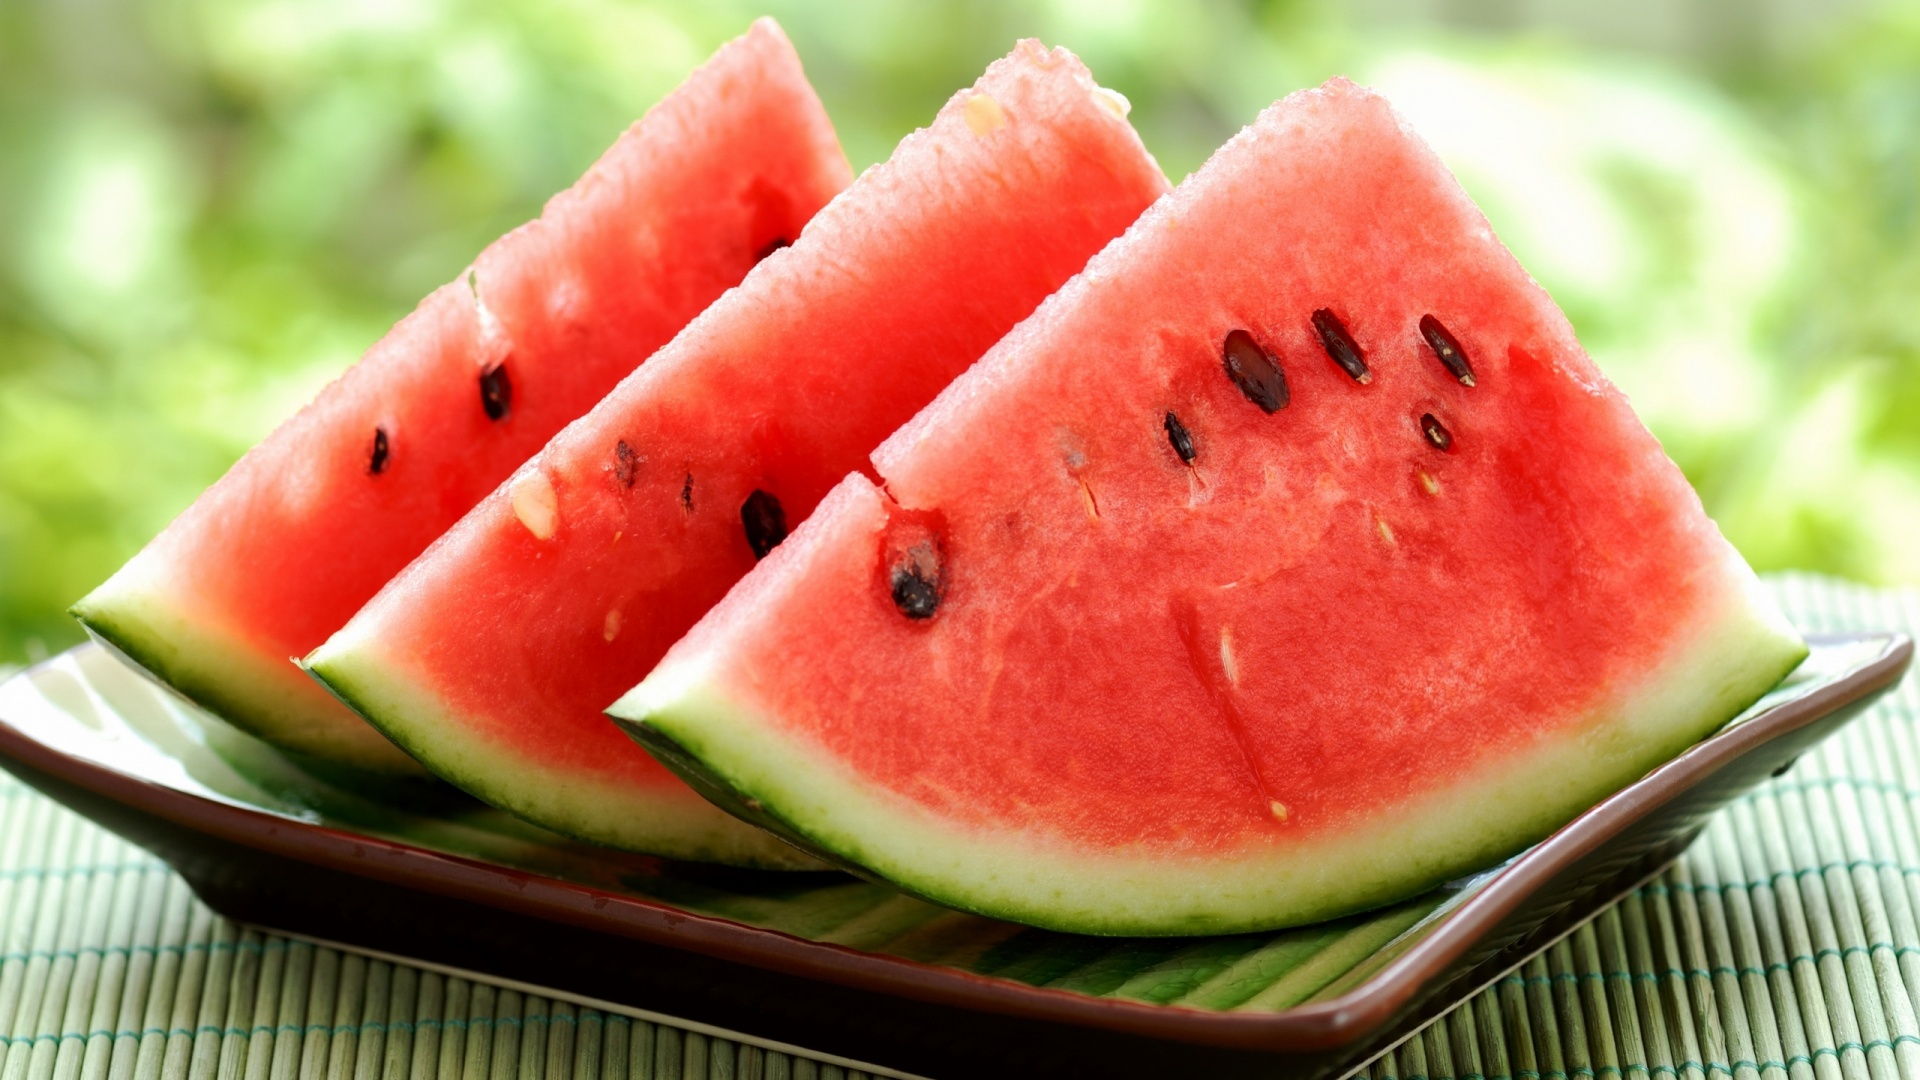 Watermelon - مواد غذایی با کالری تقریبا صفر و استفاده از آنها در رژیم لاغری 